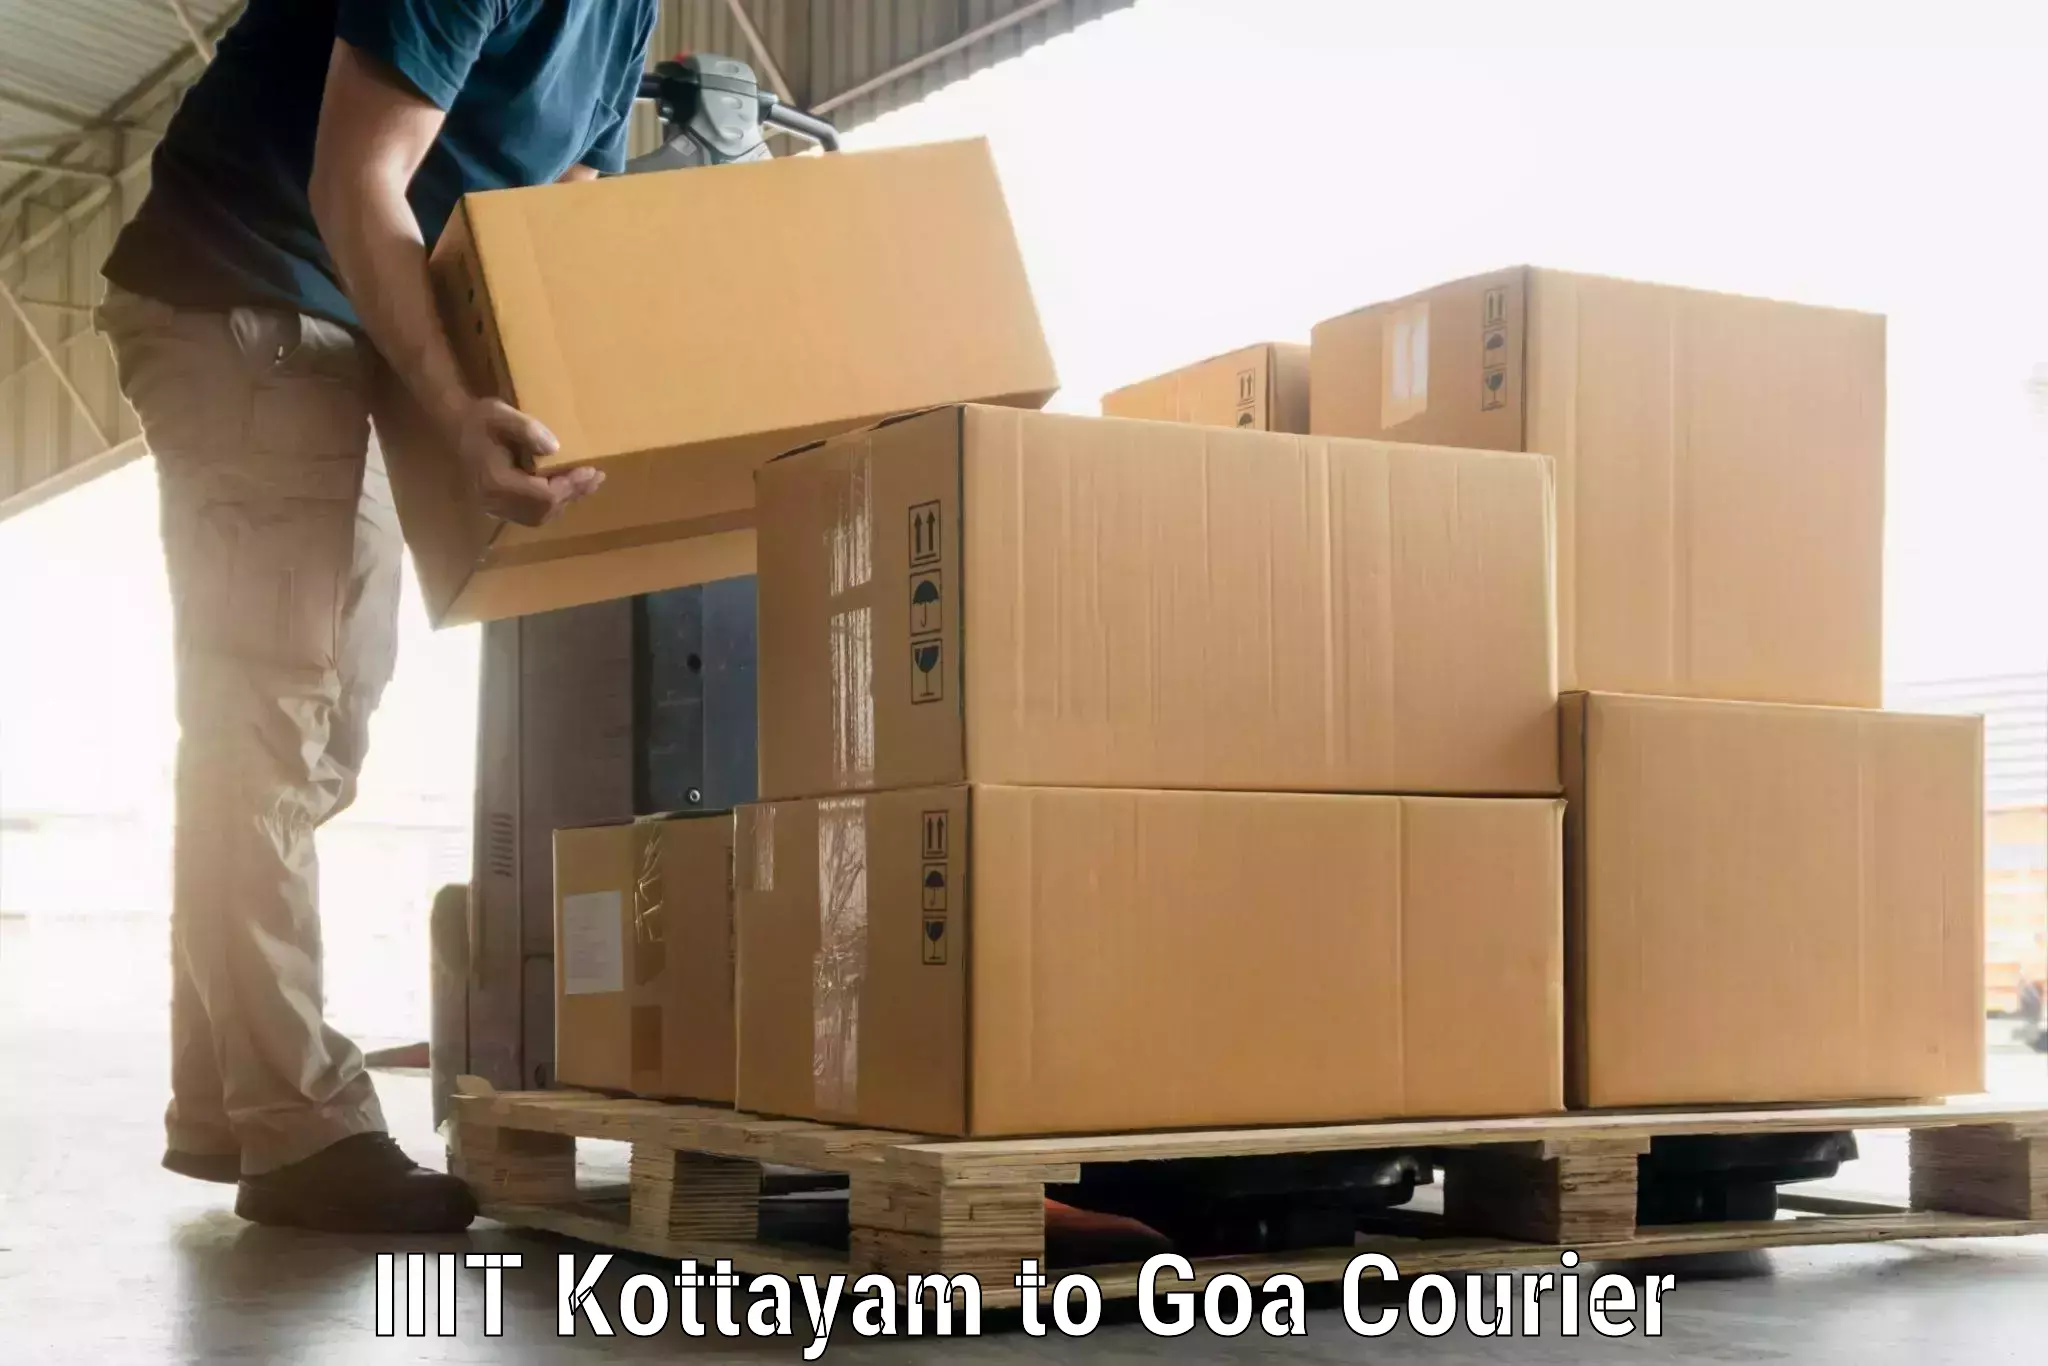 Luggage delivery estimate IIIT Kottayam to Panaji